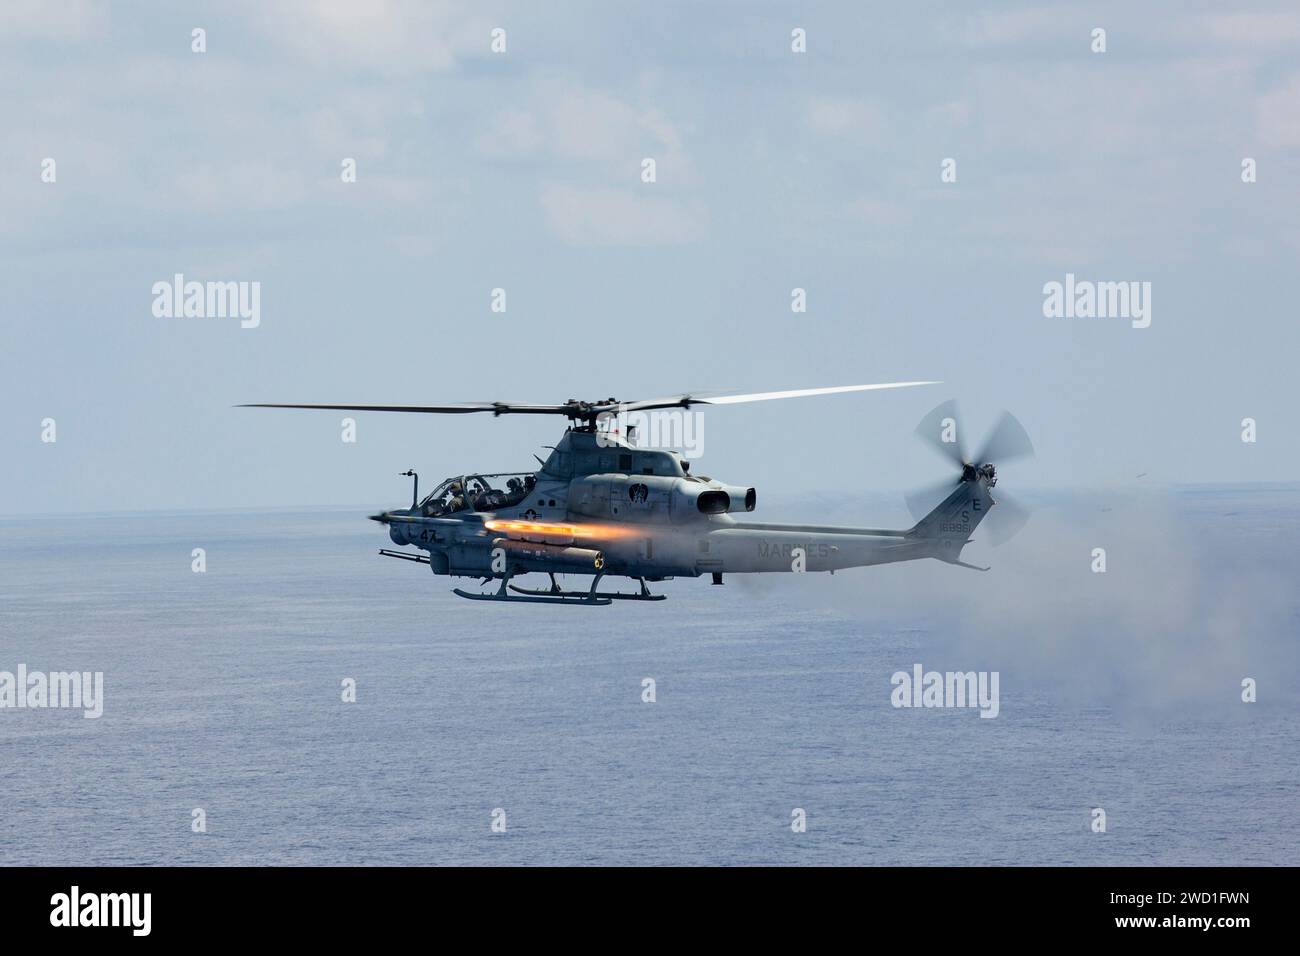 Un hélicoptère Viper AH-1Z du corps des Marines des États-Unis tire un missile AIM-9 Sidewinder. Banque D'Images